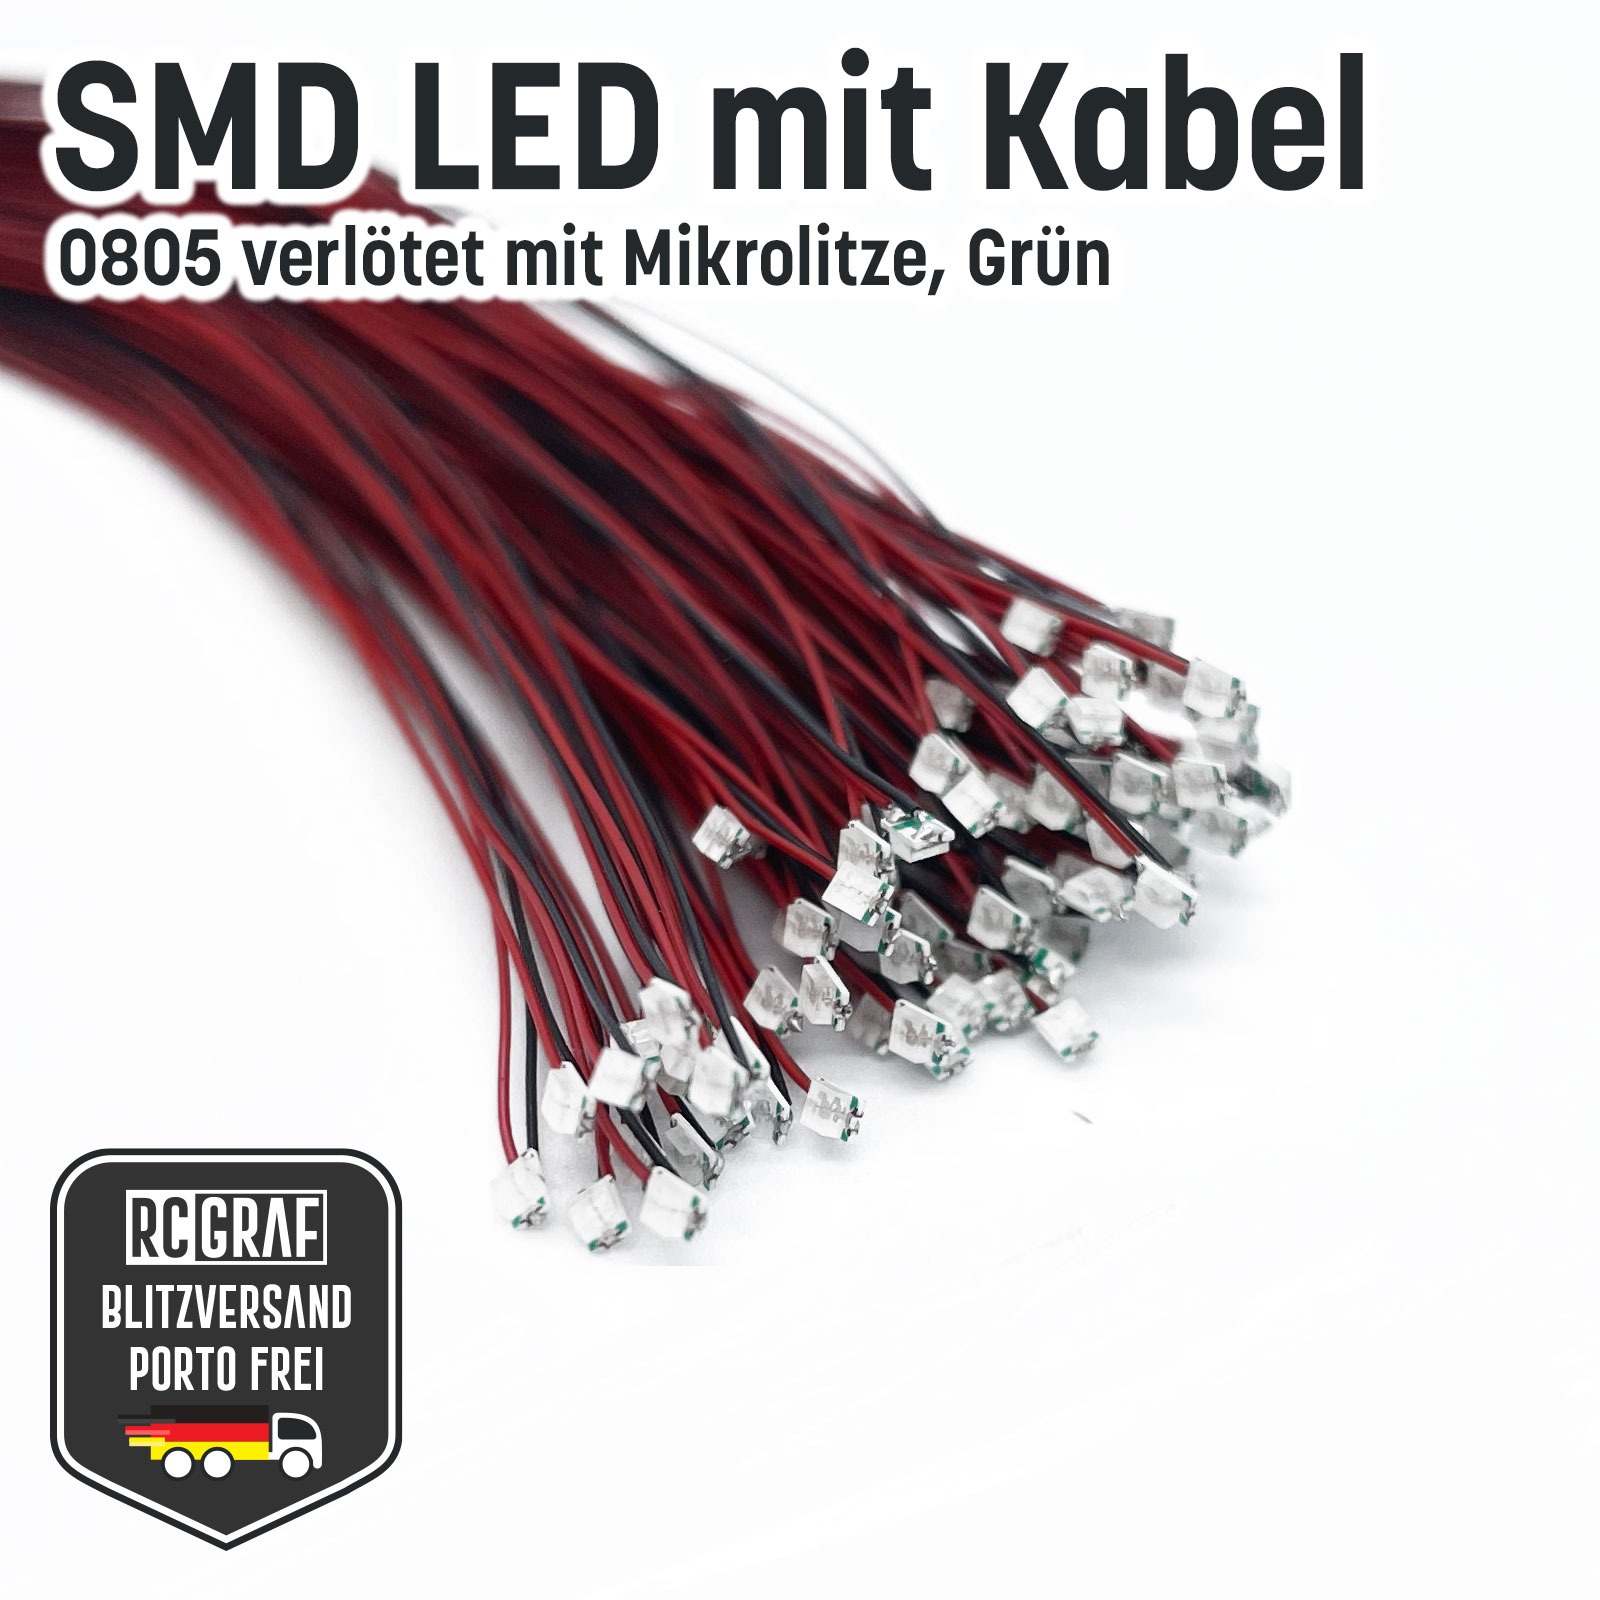 SMD LED 0805 Microlitze 30cm verlötet 4